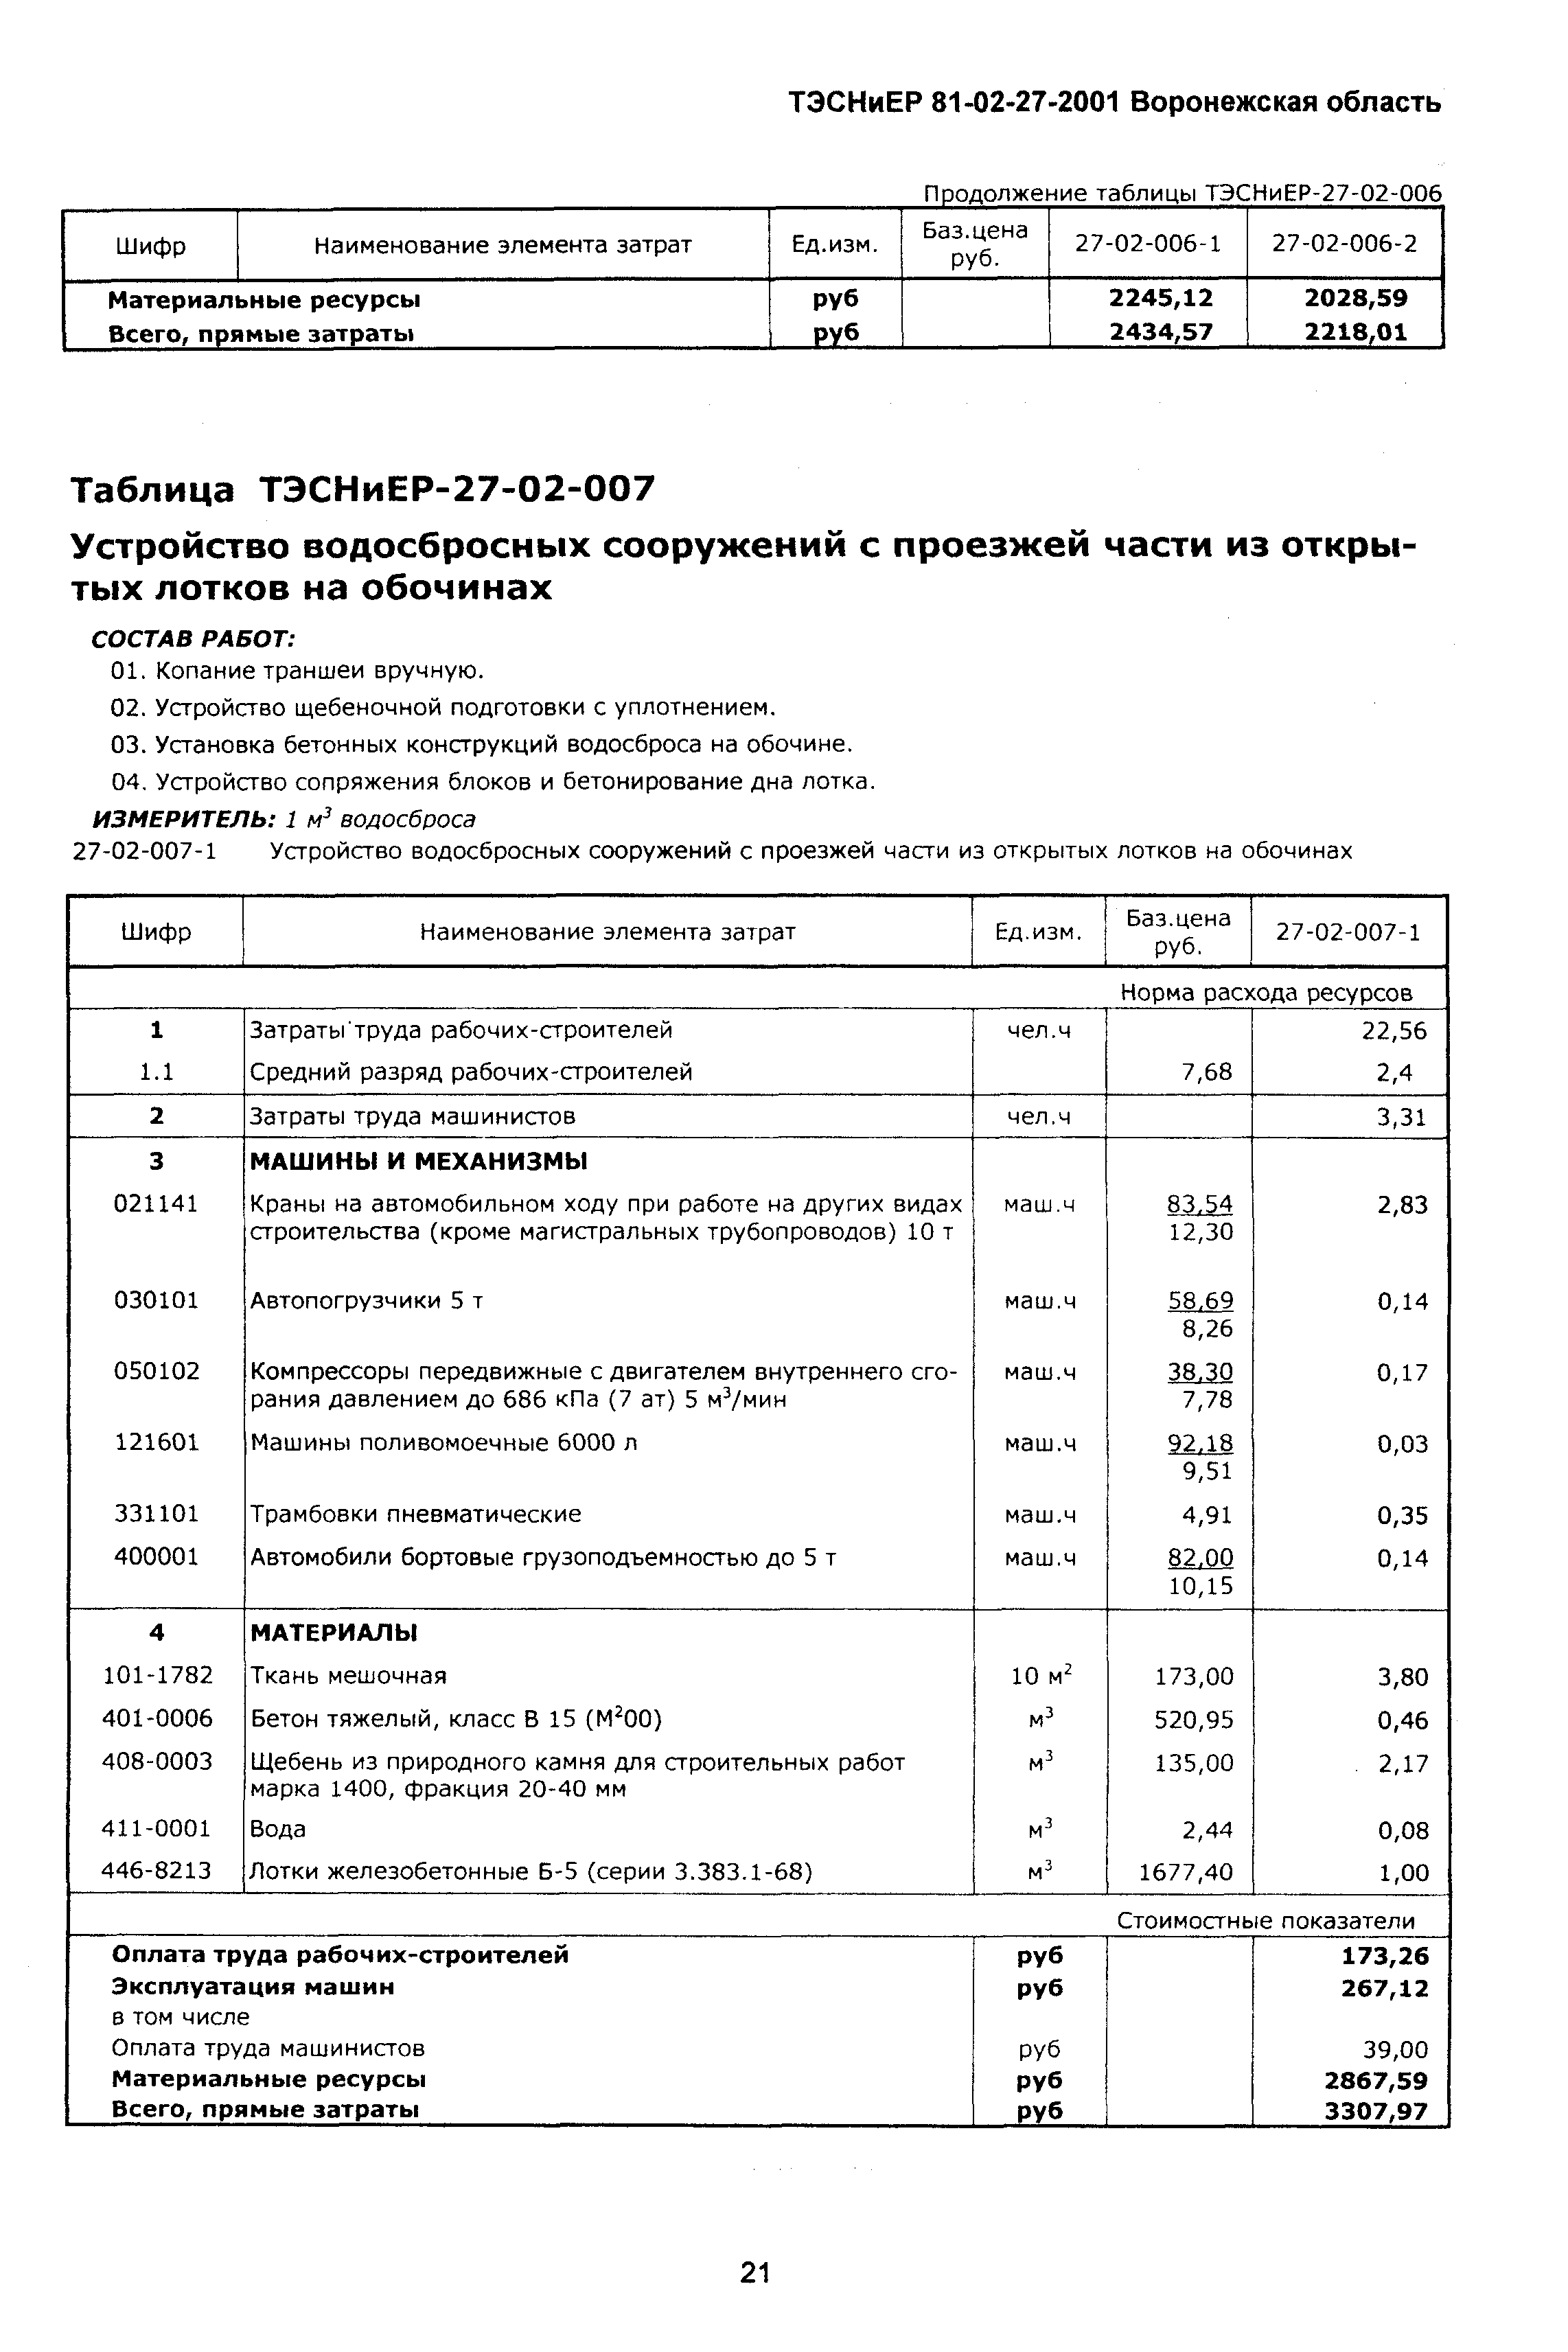 ТЭСНиЕР Воронежская область 81-02-27-2001